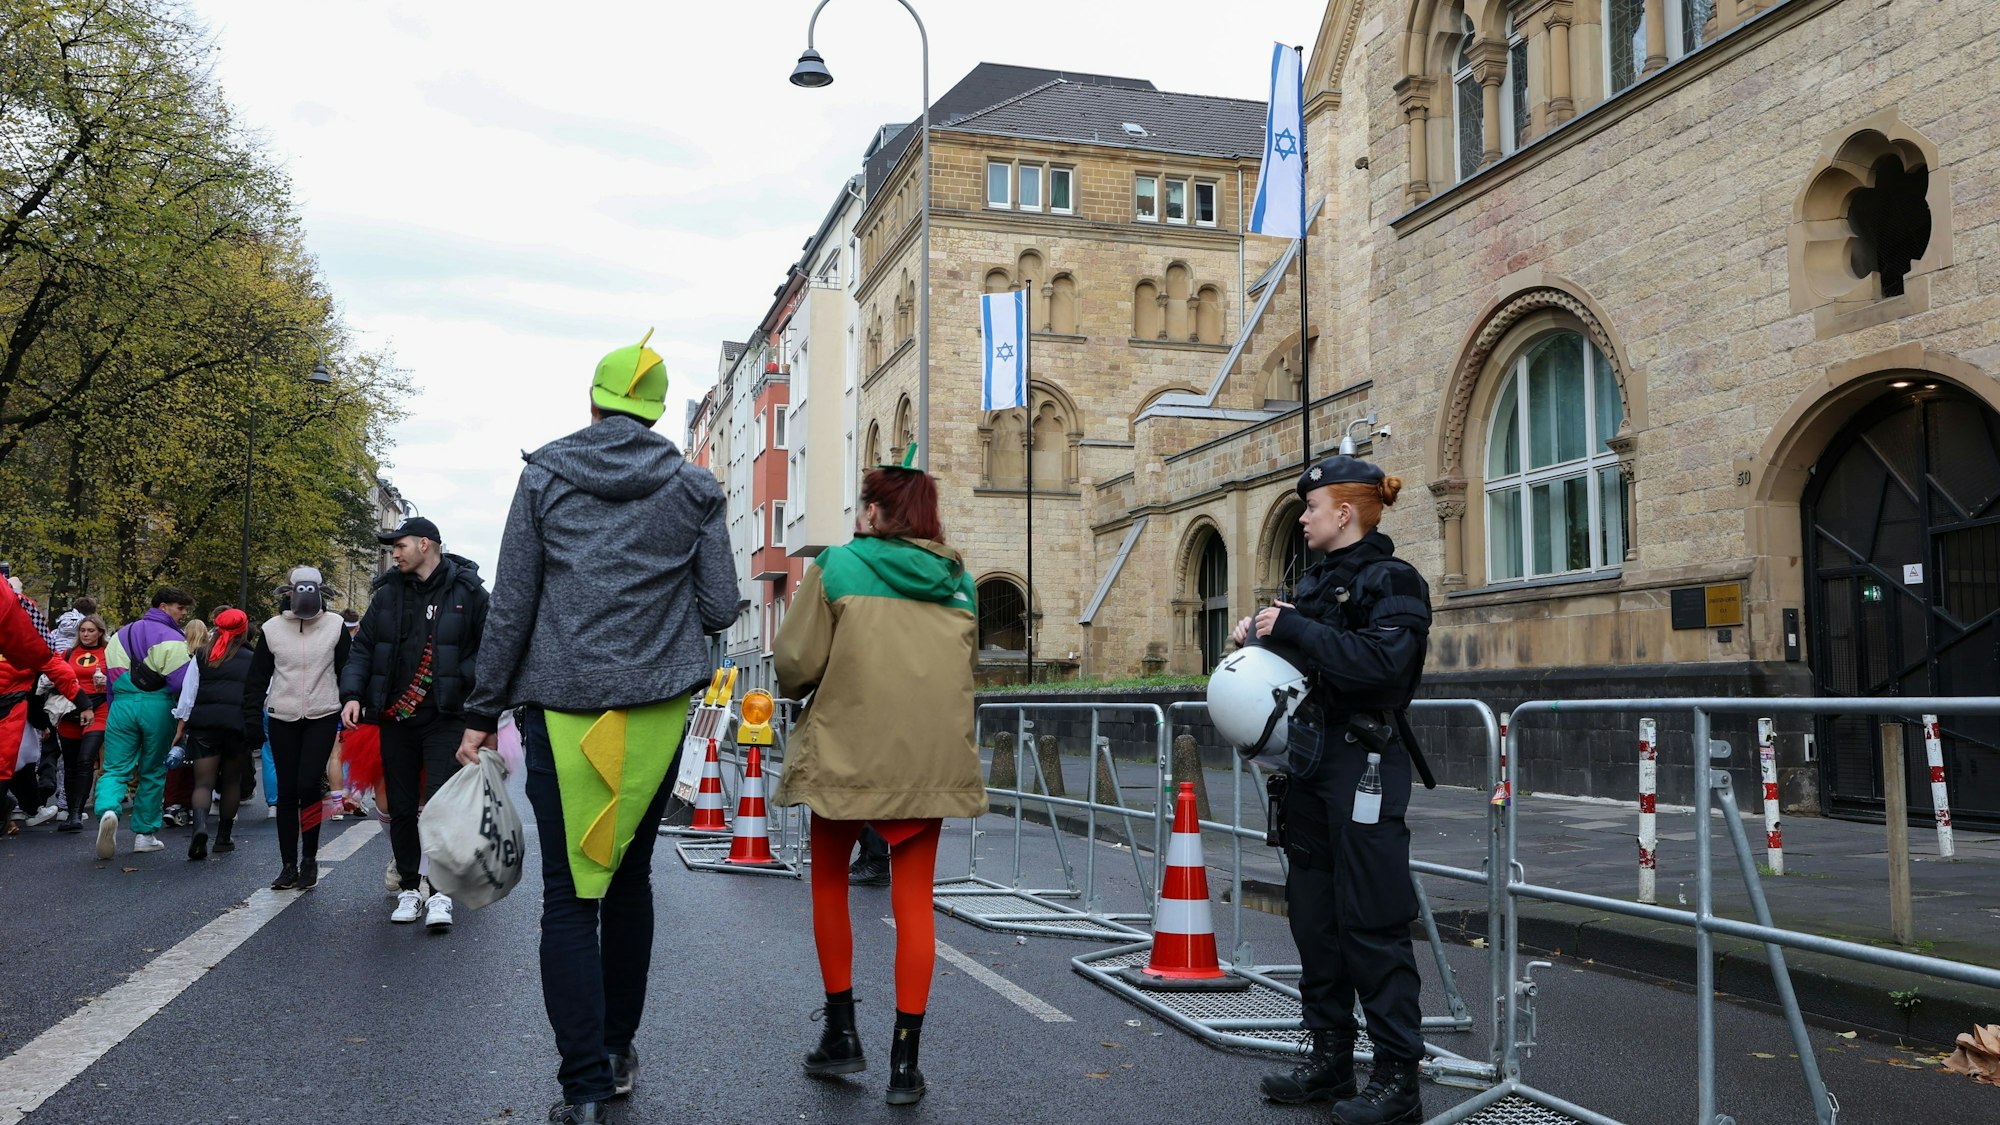 Die Kölner Synagoge in der Roonstraße befindet sich in direkter Nachbarschaft zur Zülpicher Straße. Die Polizei hat am Morgen Absperrgitter vor dem Gebäude aufgestellt, Polizeibeamte stehen davor und bewachen das Gebäude.



